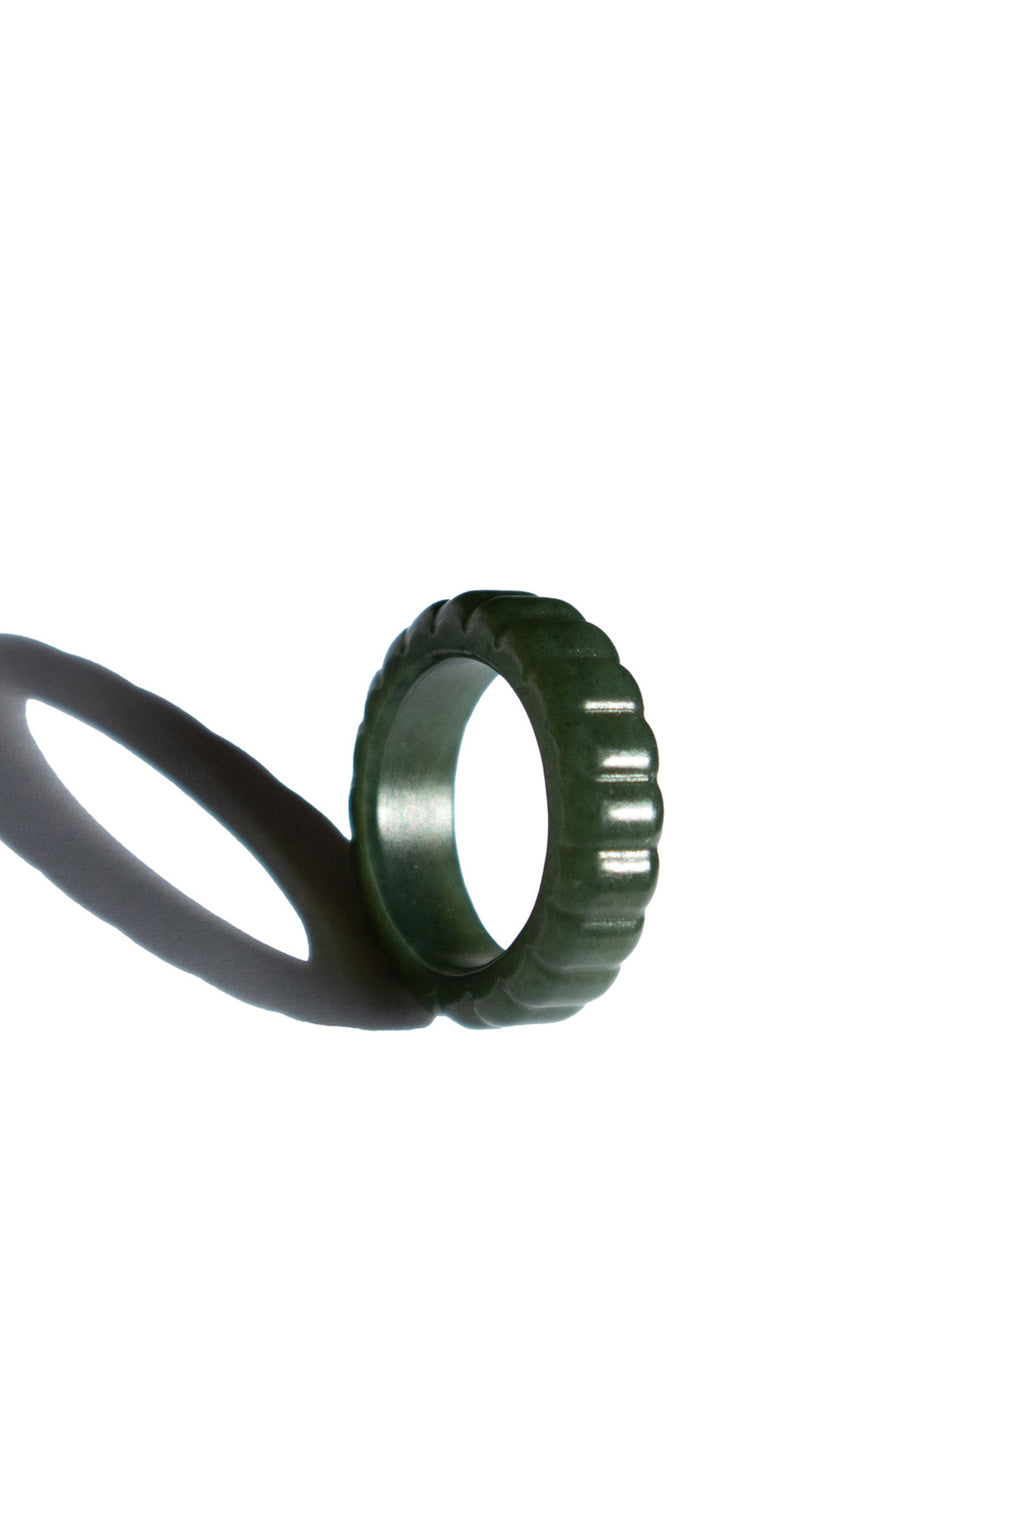 seree-sophia-skinny-ribbed-ring-in-dark-green-nephrite-jade-2